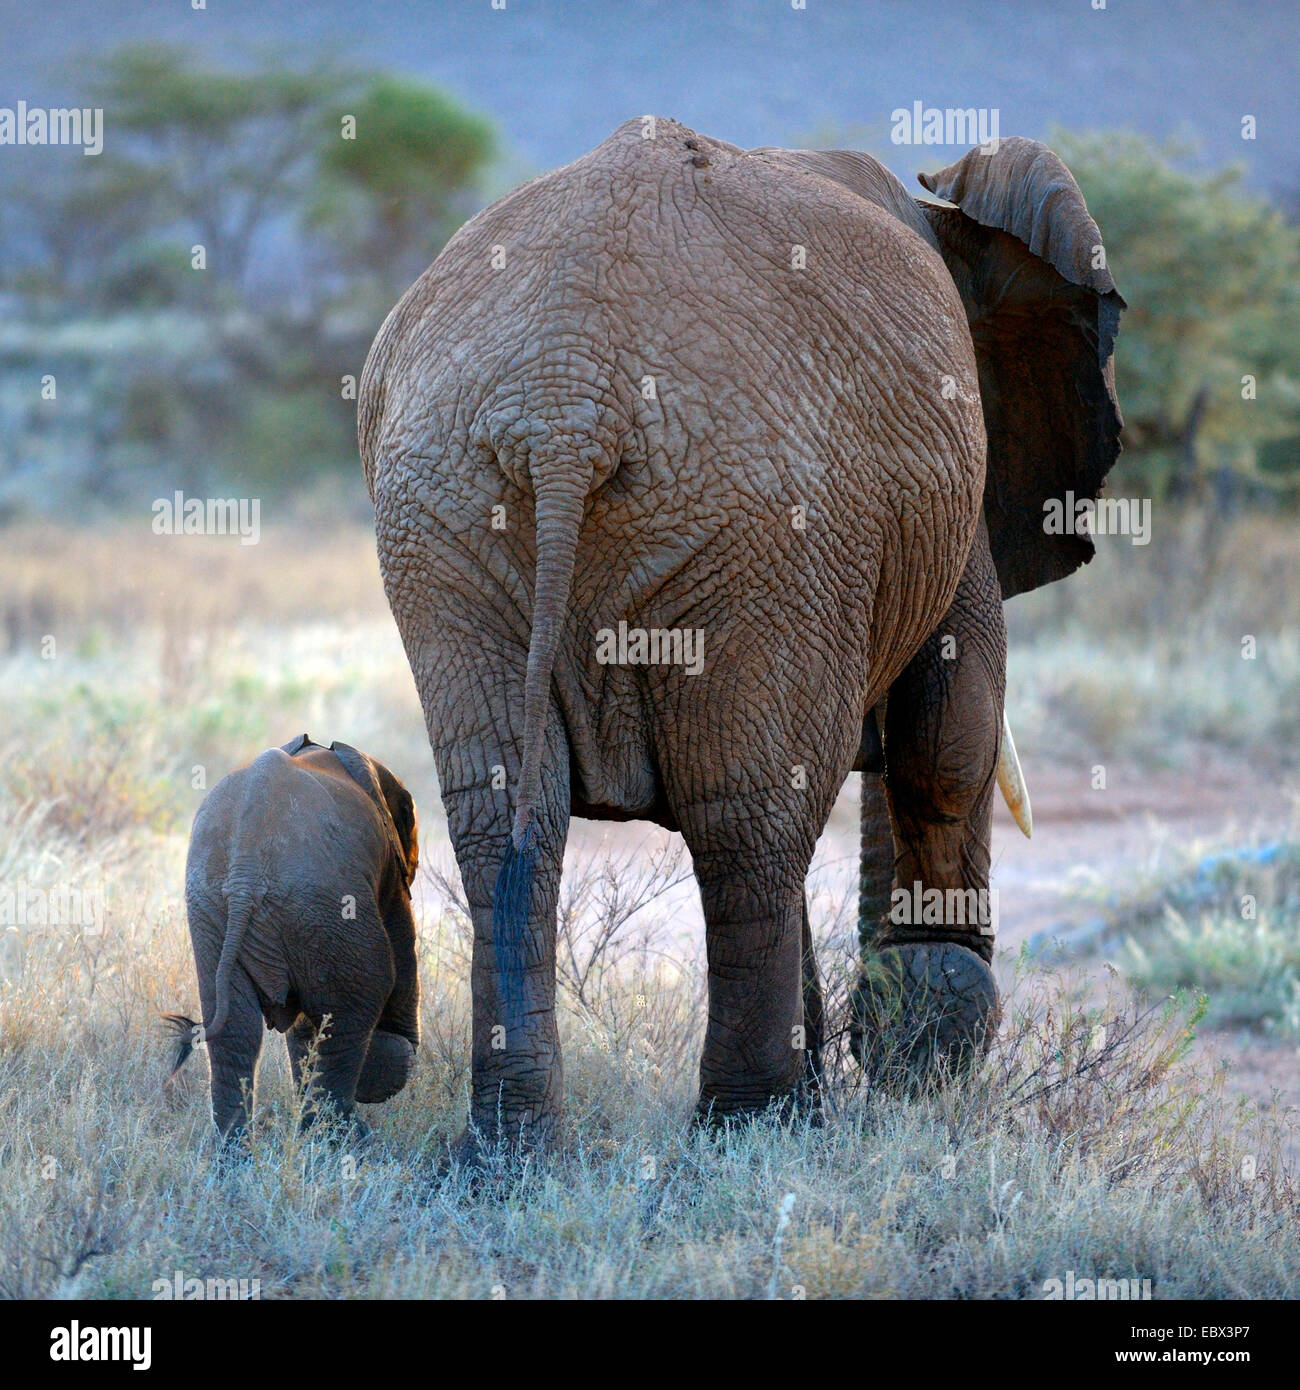 L'éléphant africain (Loxodonta africana), vue arrière d'une femelle et son petit walking lock-step, Kenya, Samburu National Reserve Banque D'Images